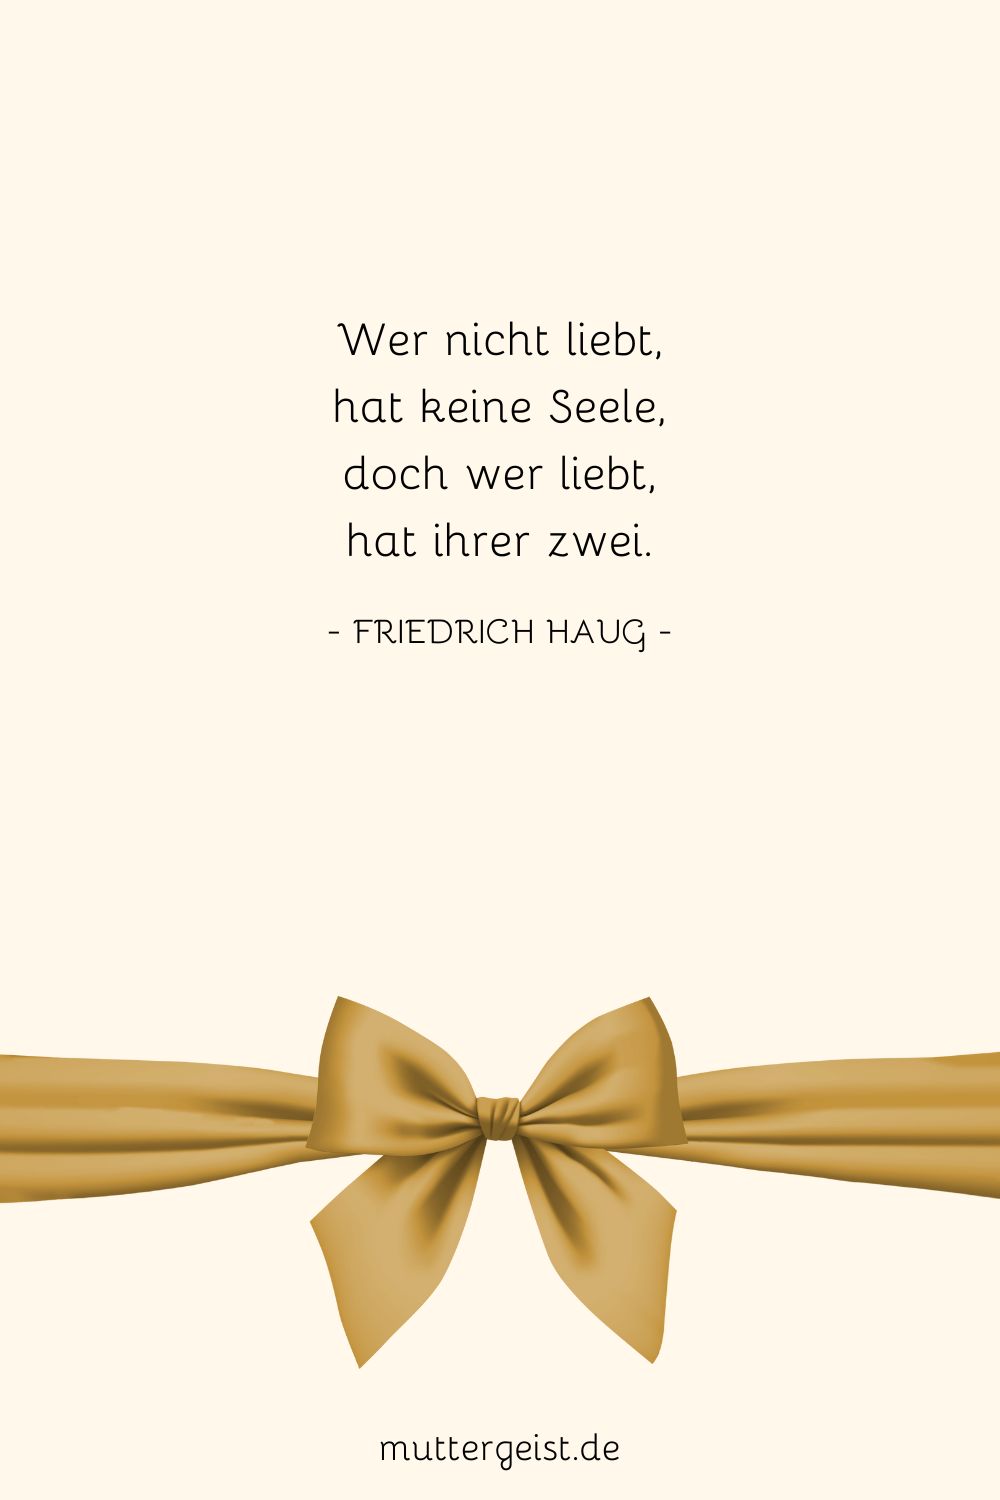 Zitat über Seele von Friedrich Haug als Geburtstagswunsch